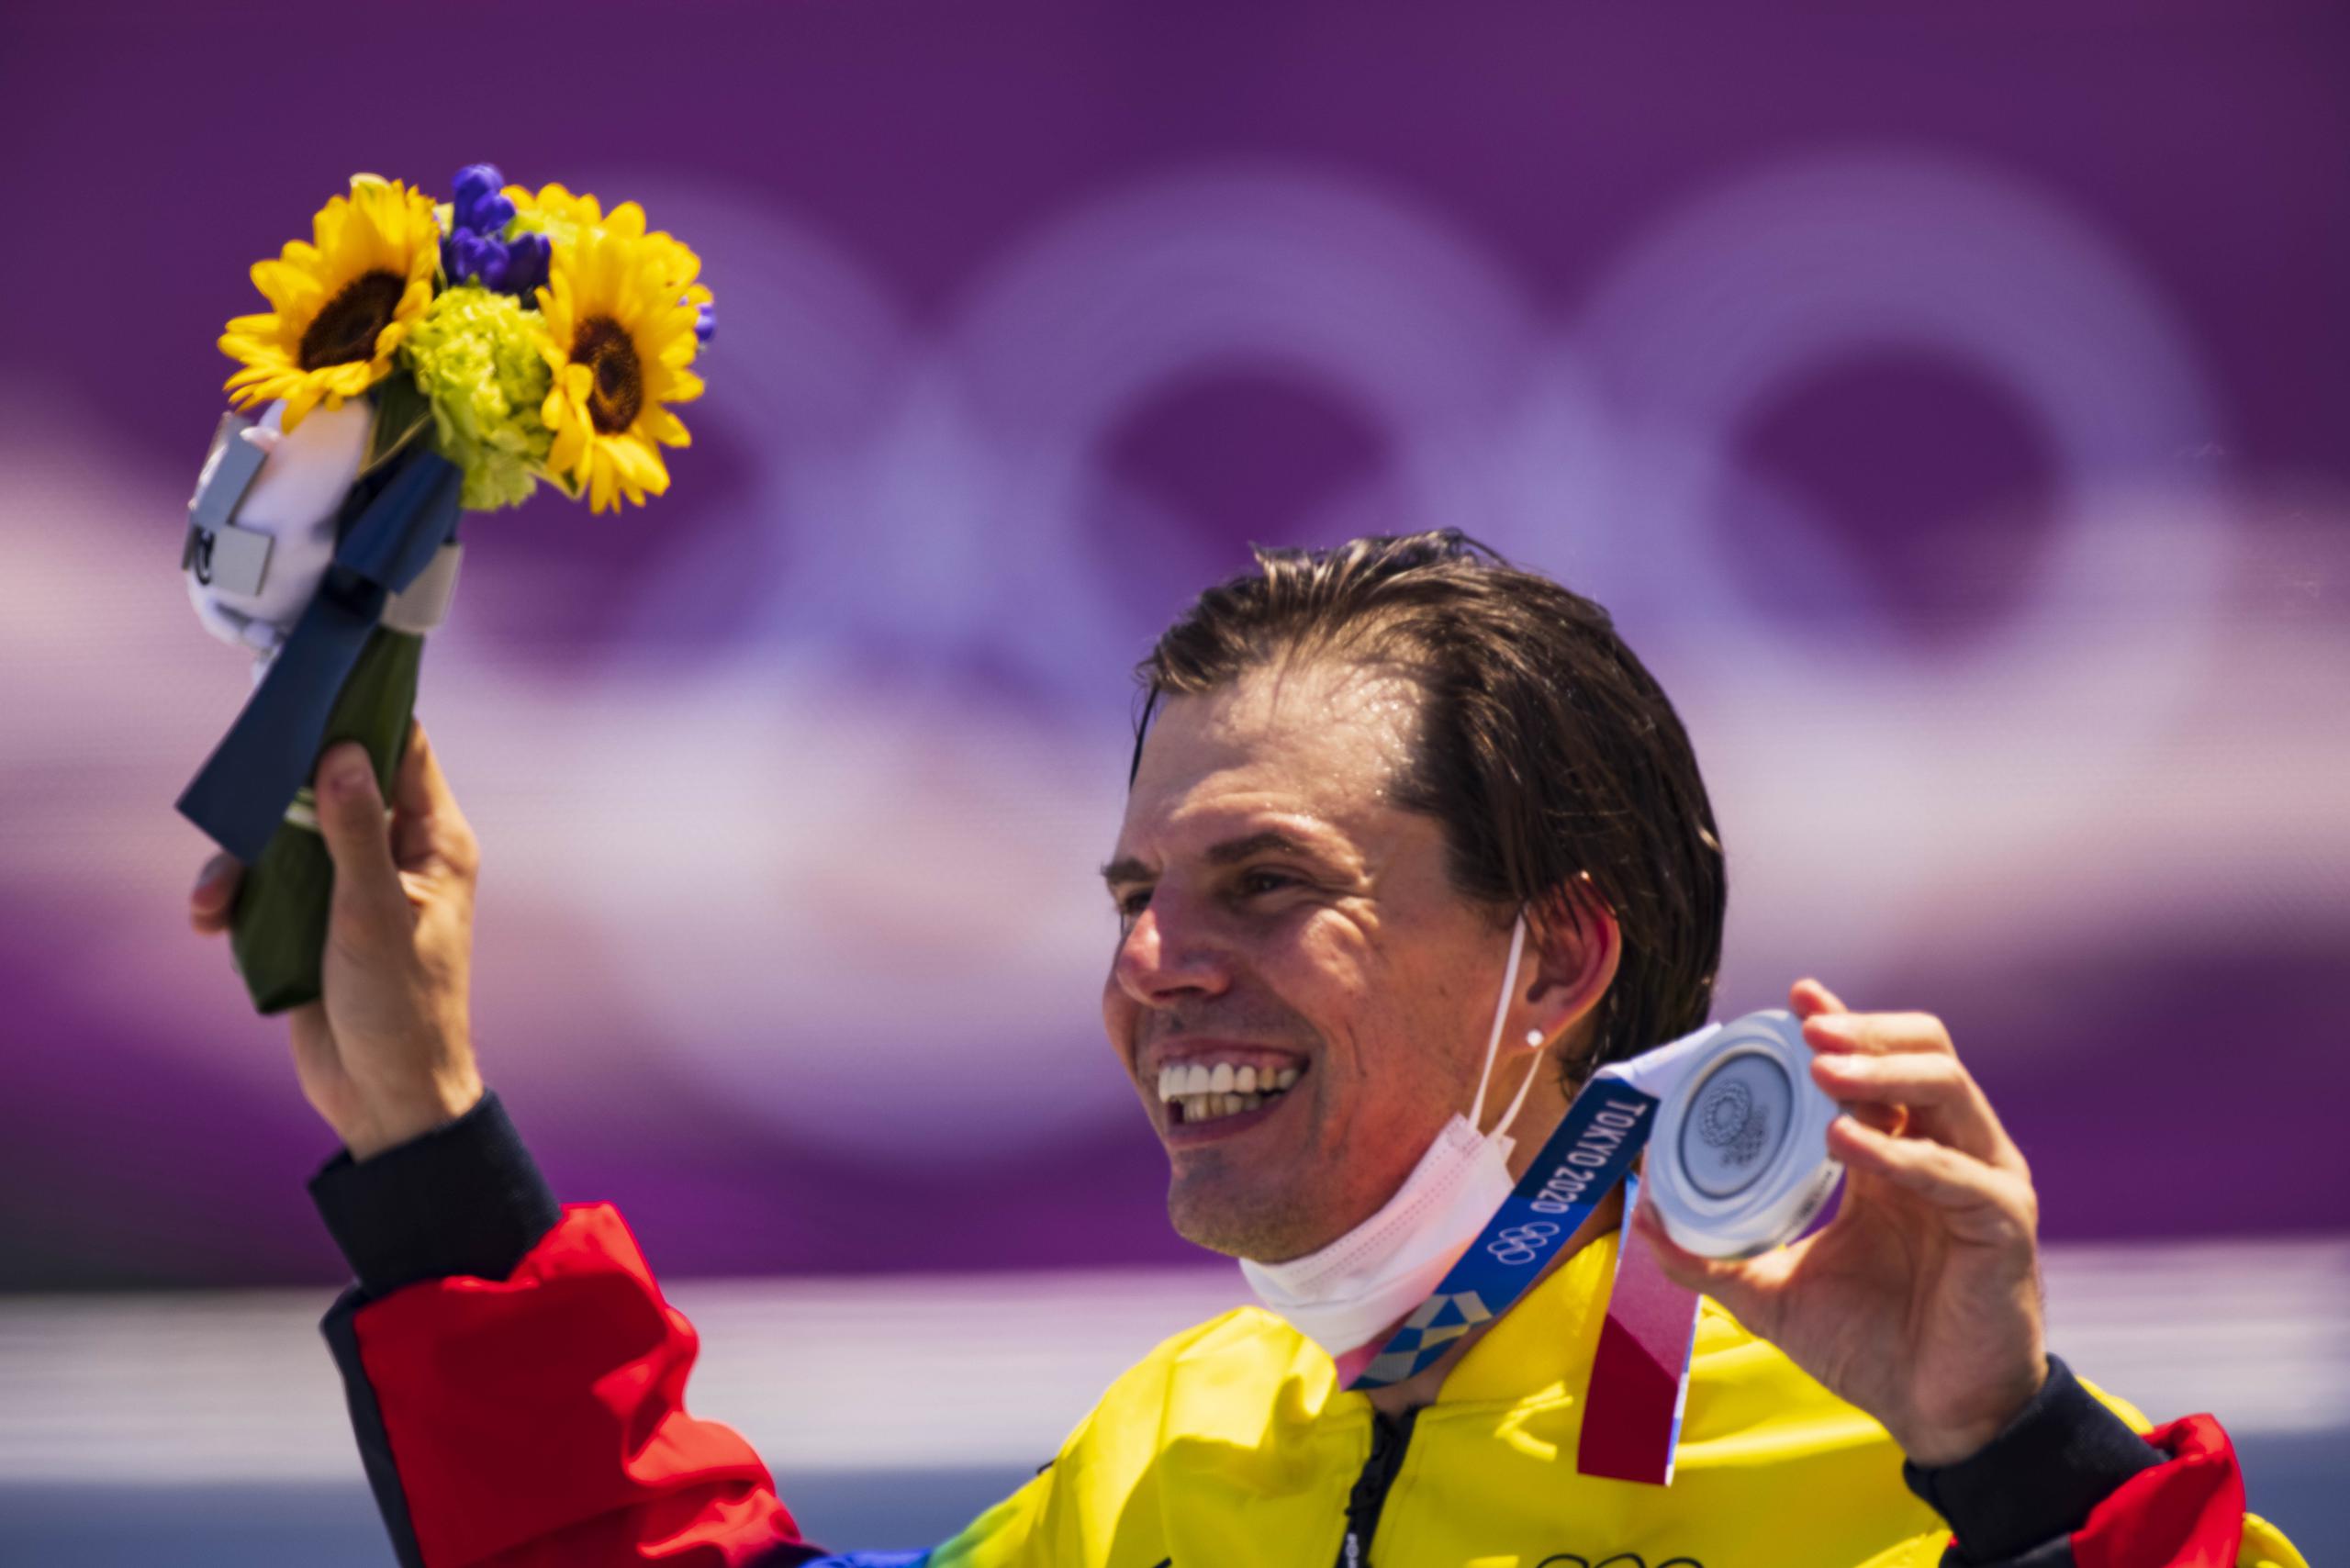 Daniel Dhers, leyenda del BMX, ha visto cumplido un sueño de participar en unas Olimpiadas a los 36 años. El deporte es olímpico por vez primera en Tokio.